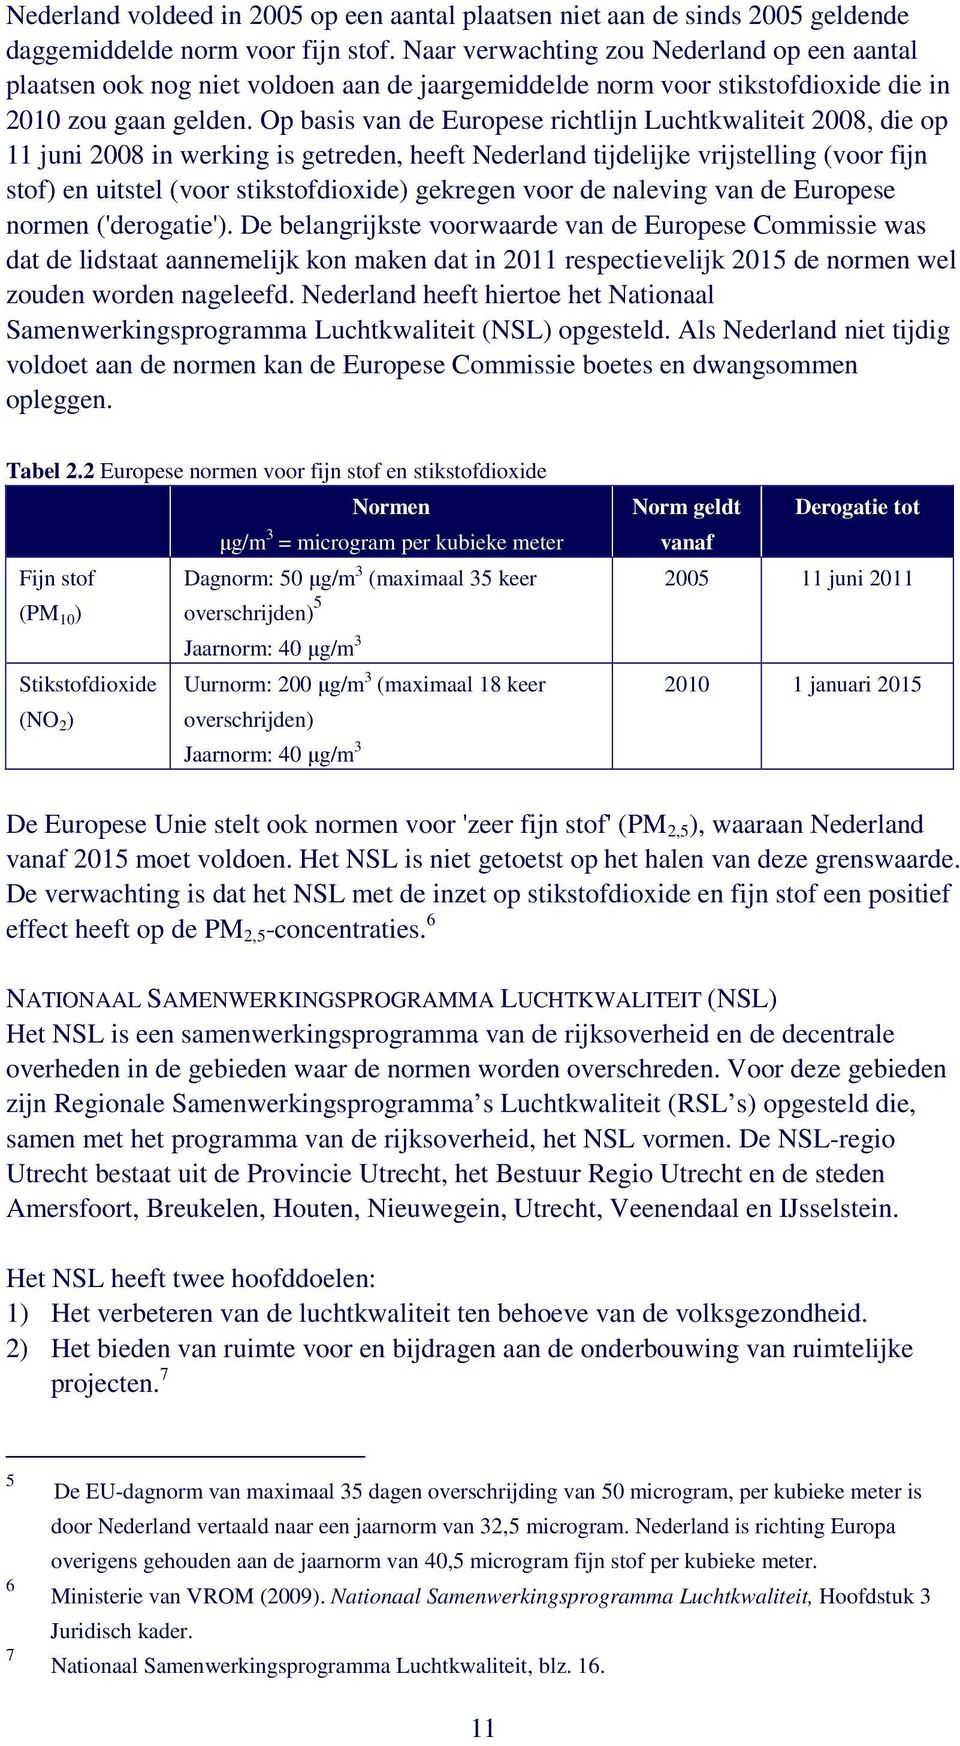 Op basis van de Europese richtlijn Luchtkwaliteit 2008, die op 11 juni 2008 in werking is getreden, heeft Nederland tijdelijke vrijstelling (voor fijn stof) en uitstel (voor stikstofdioxide) gekregen